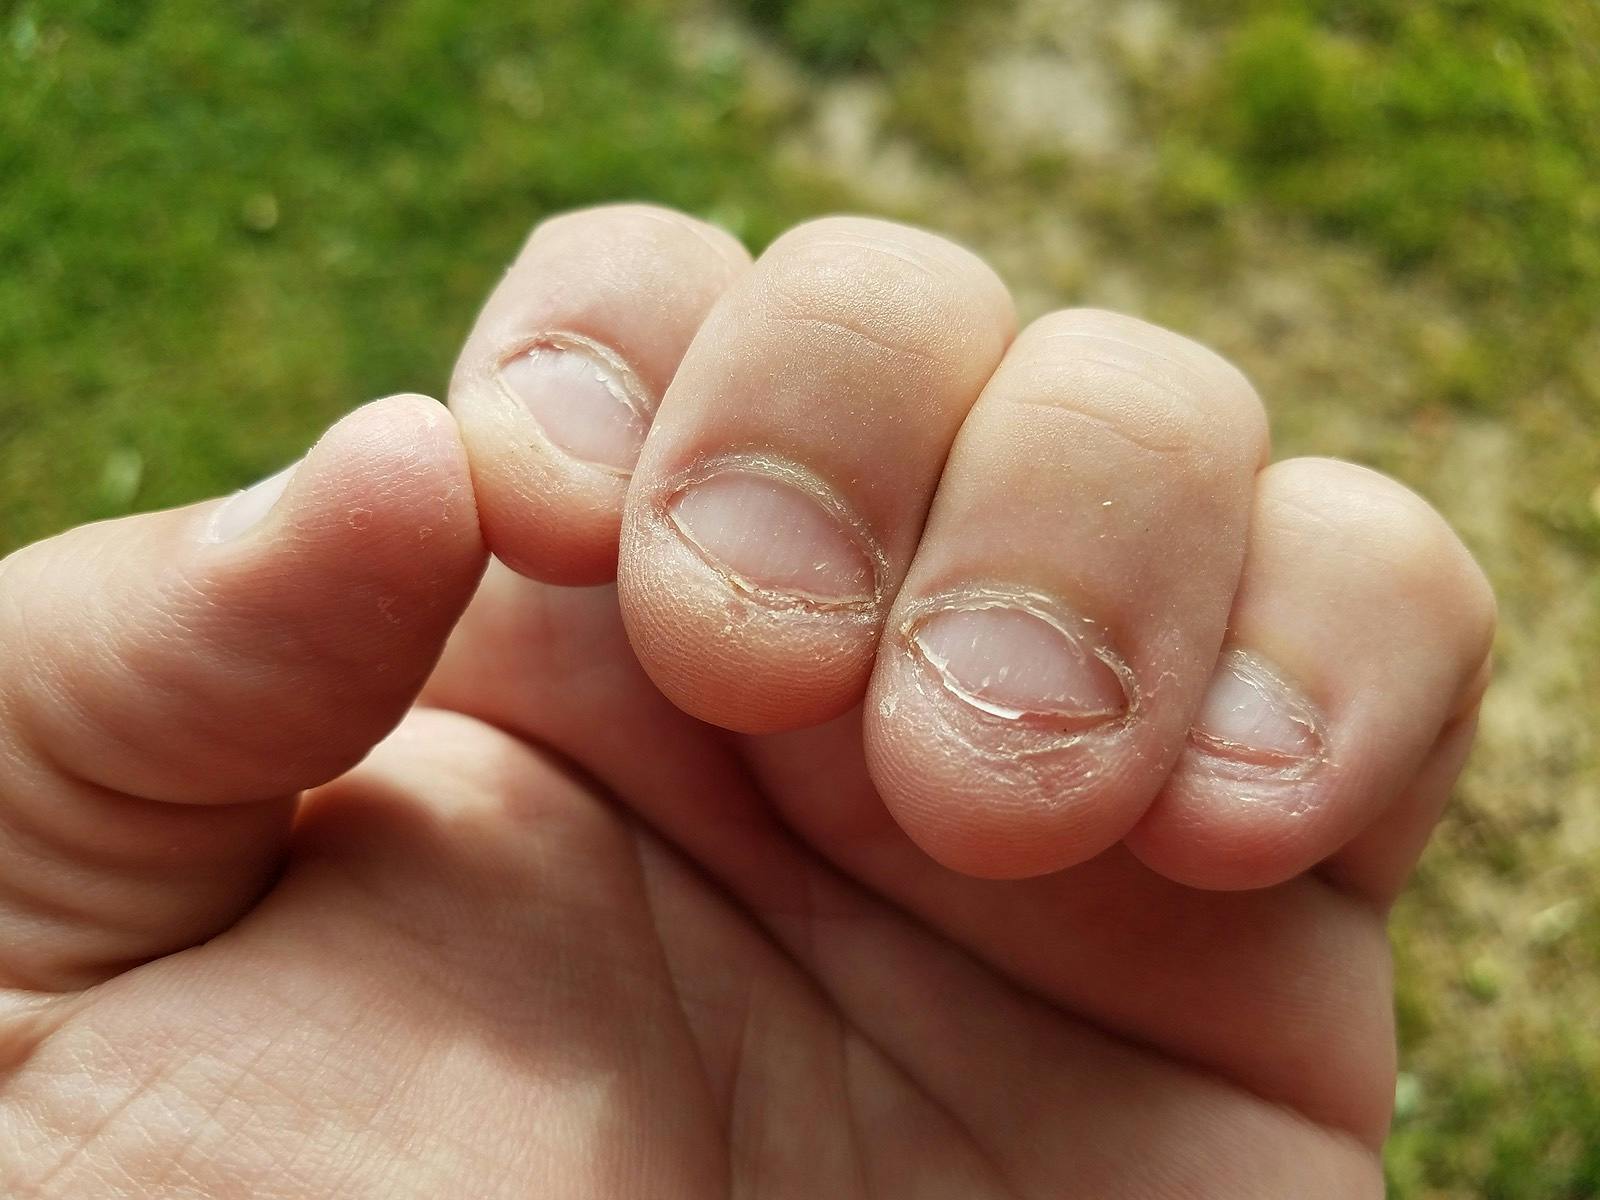 Bitten nasty unhealthy gross chewed fingernails bad habit
